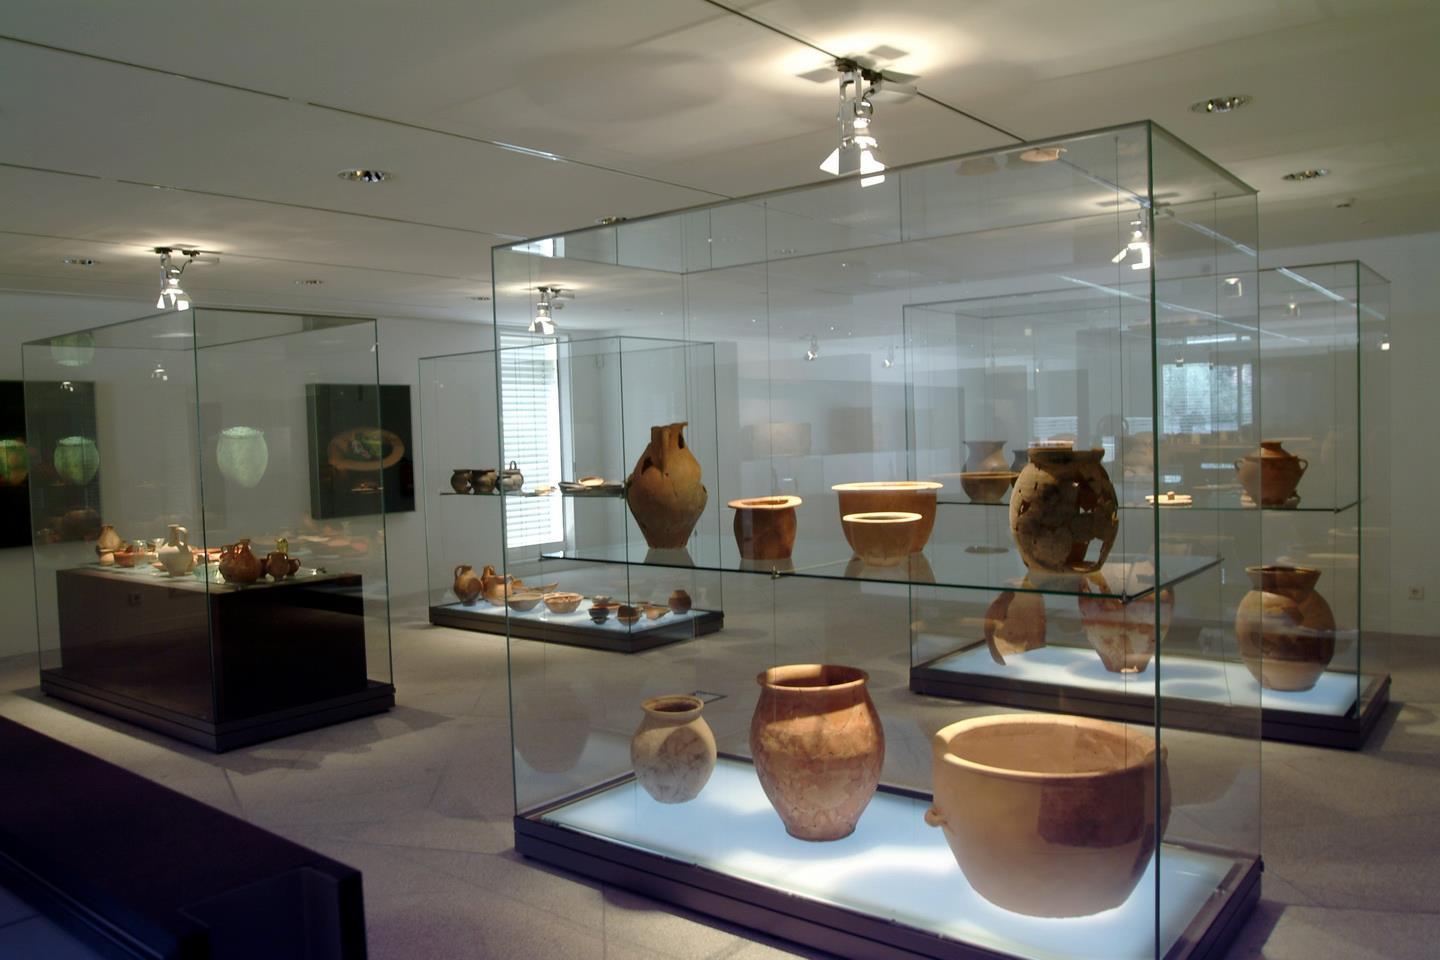 Museu de Arqueologia D. Diogo de Sousa